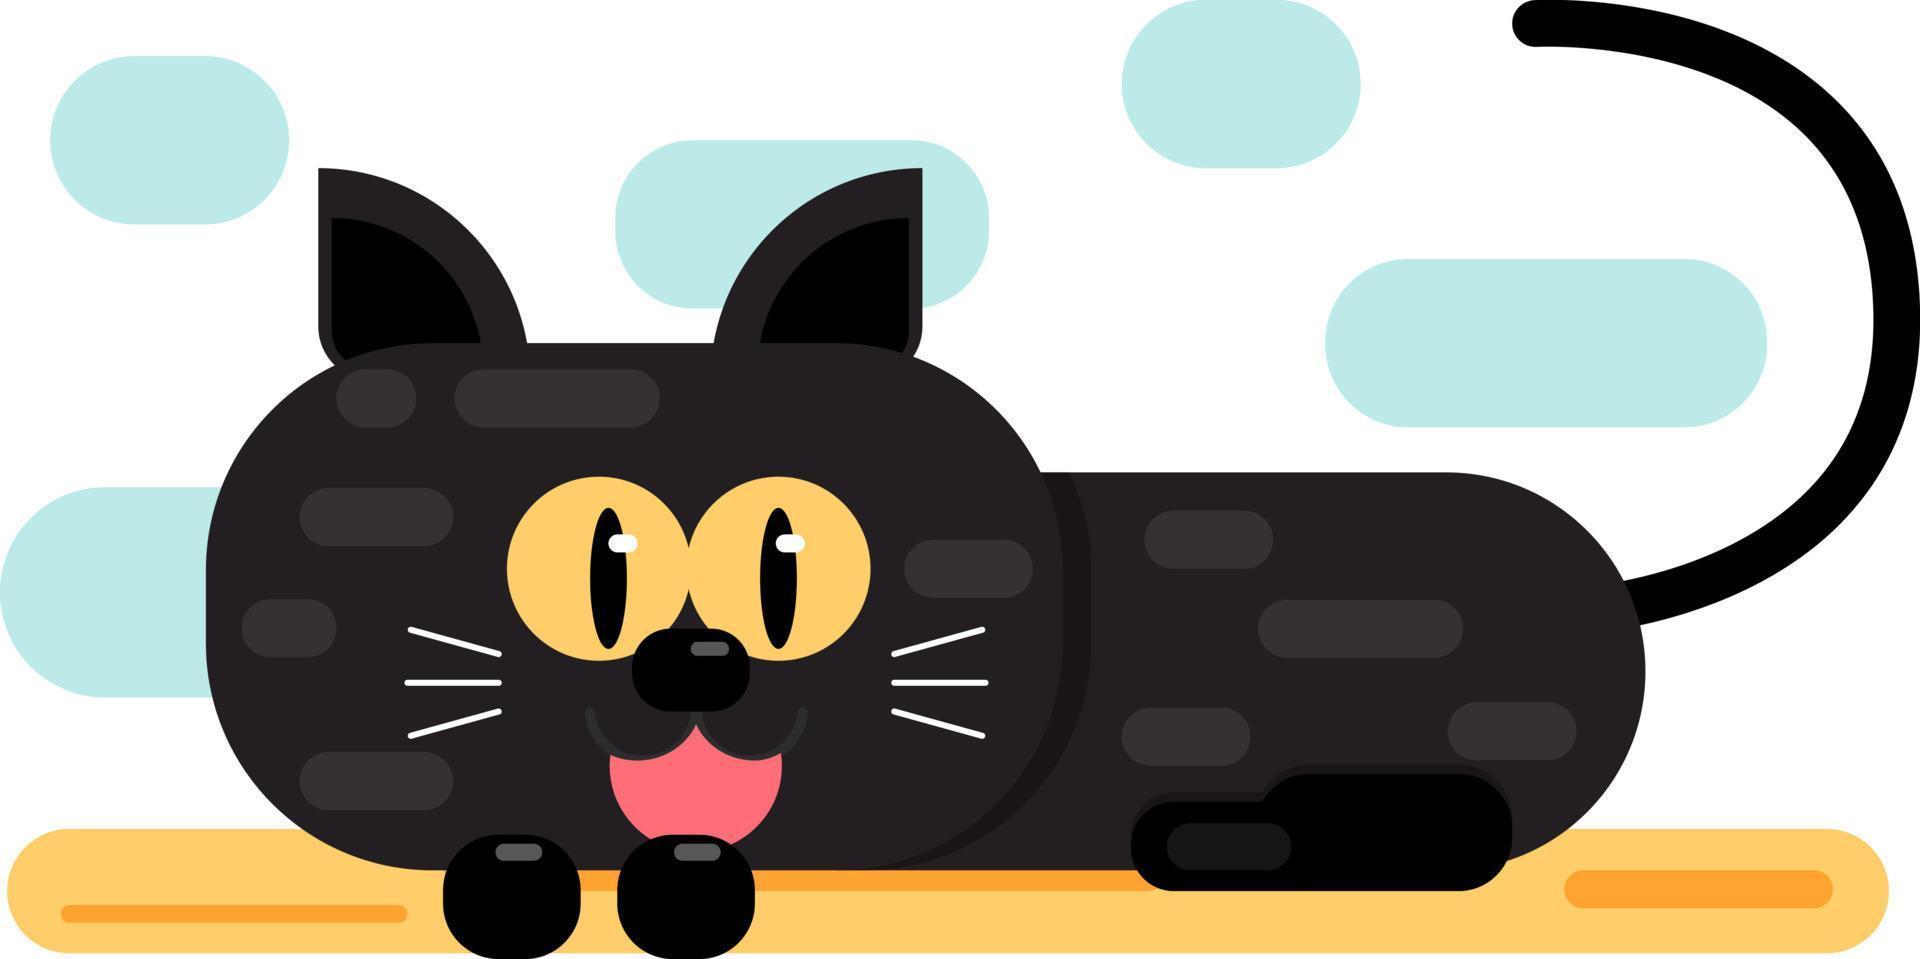 flache stilvektorillustration der schwarzen katze der karikatur. niedlicher katzencharakter. schläfriger katzensmiley vektor